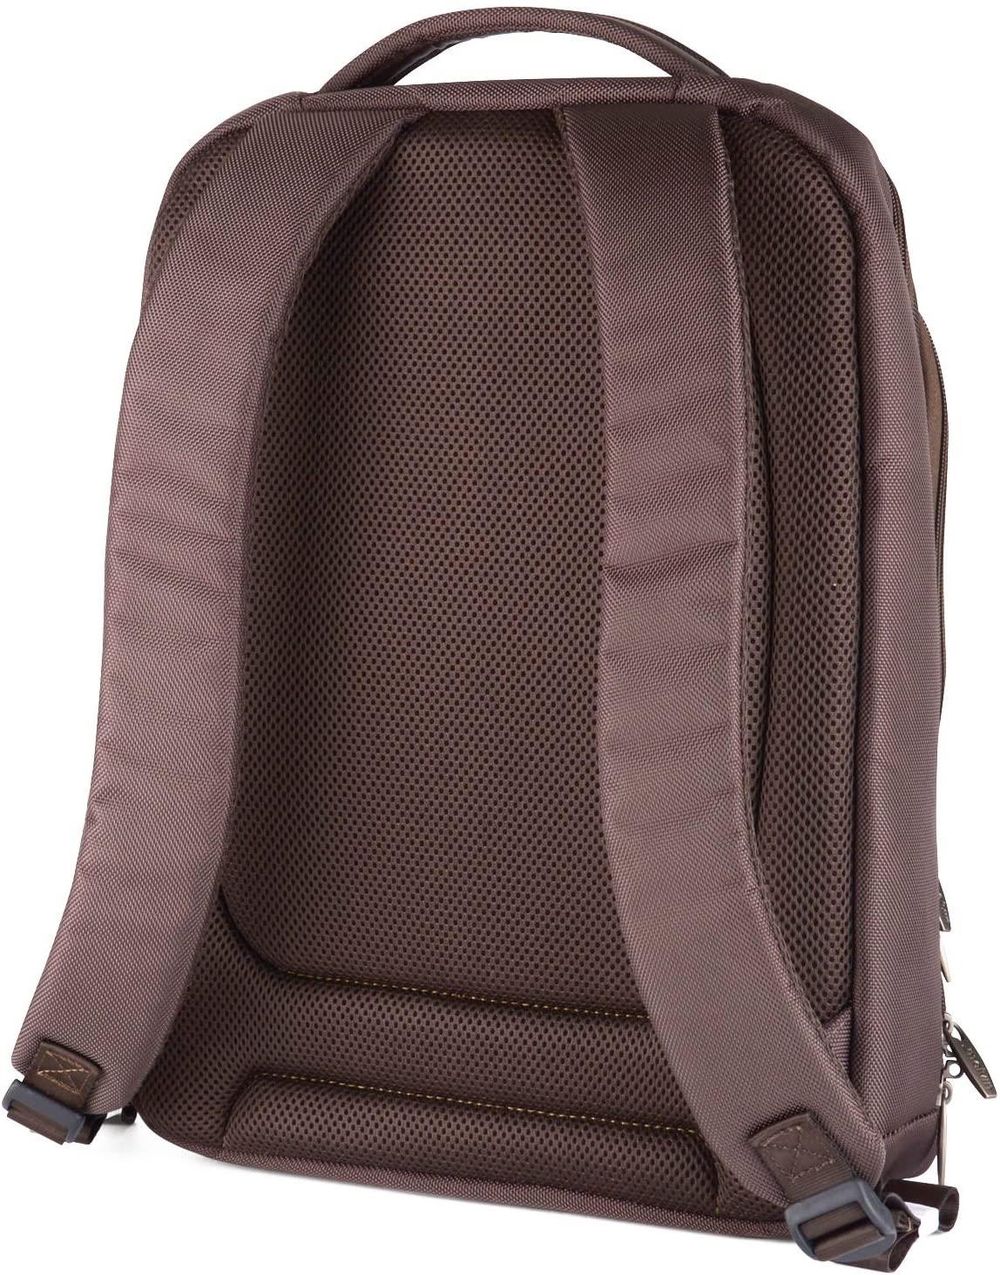 Melvin Slim Designer 15.6 Inch Laptop Backpack Brown